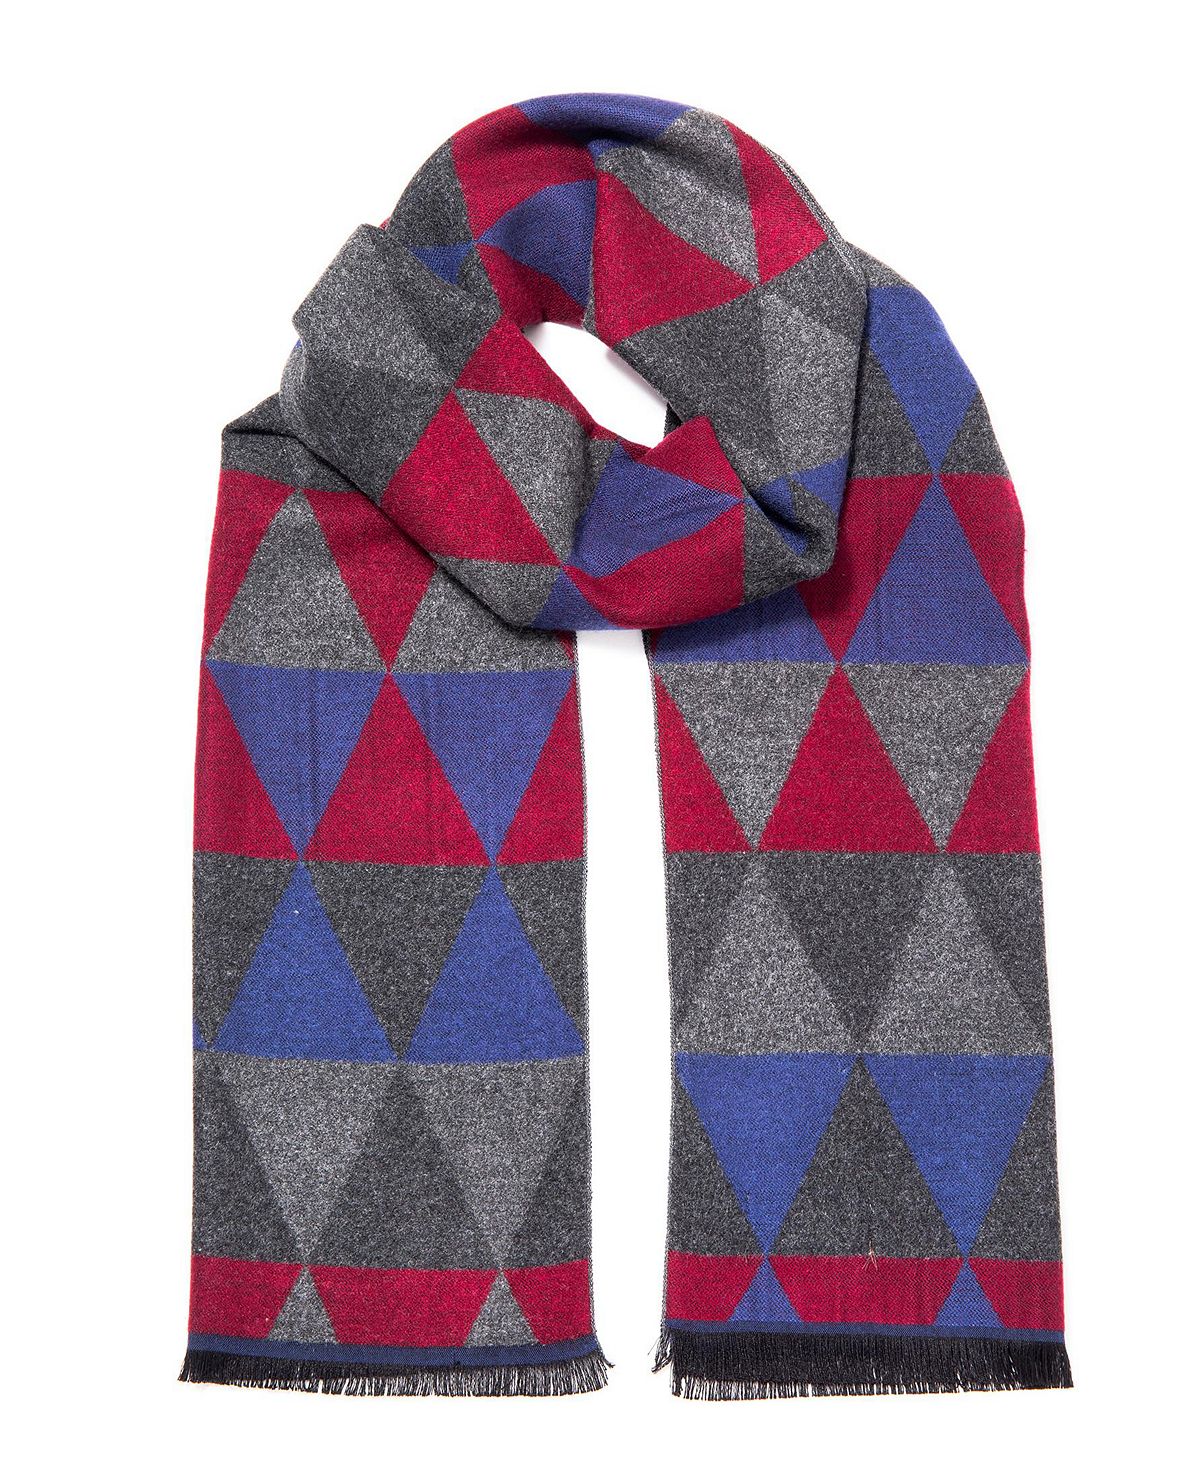 Мужской элегантный зимний шарф из кашемира Gallery Seven